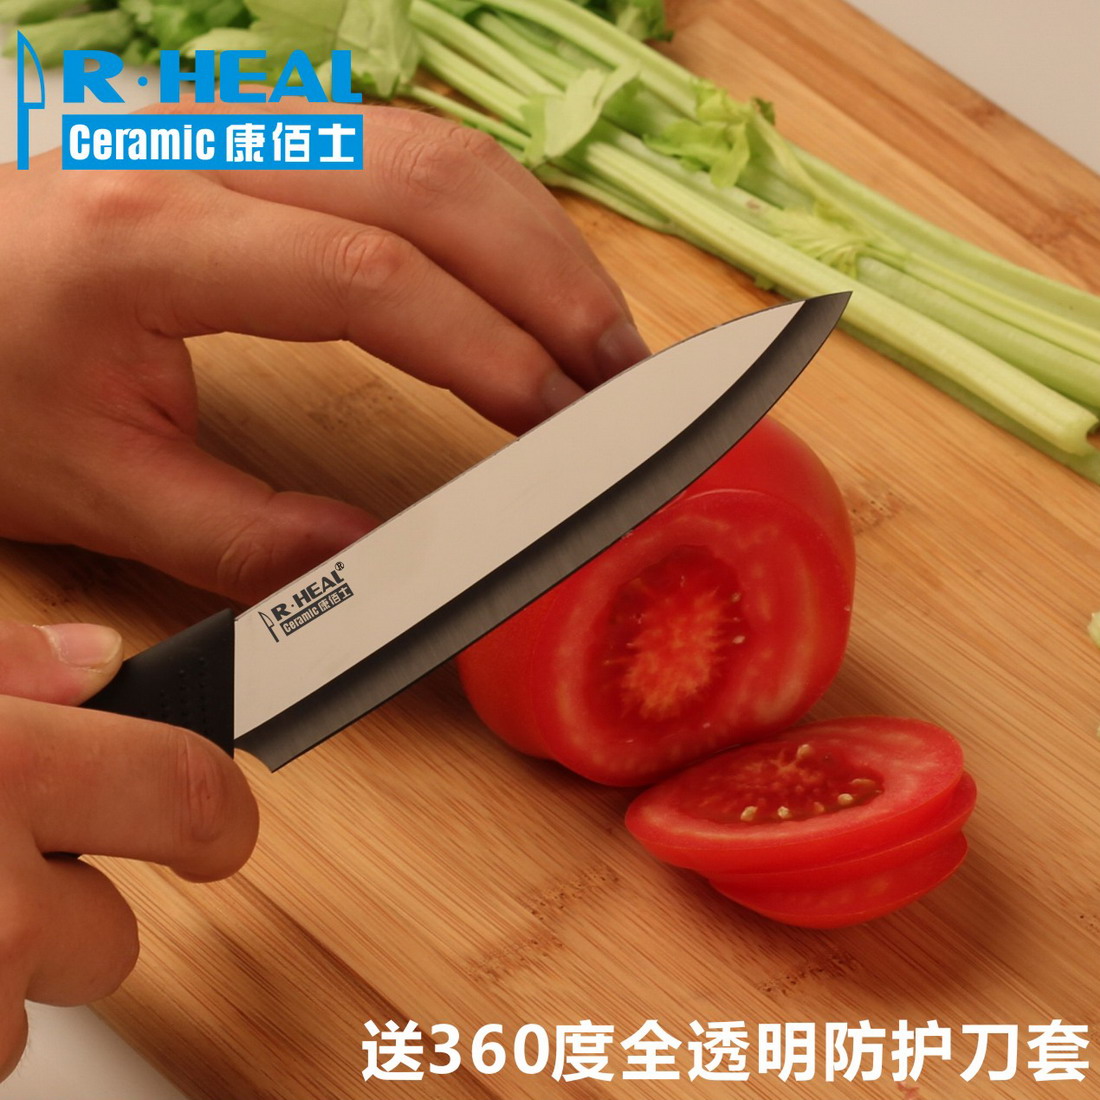 包邮 顶级超级纳米抛光 陶瓷水果蔬菜刀 对抗京瓷 15天无理由退货